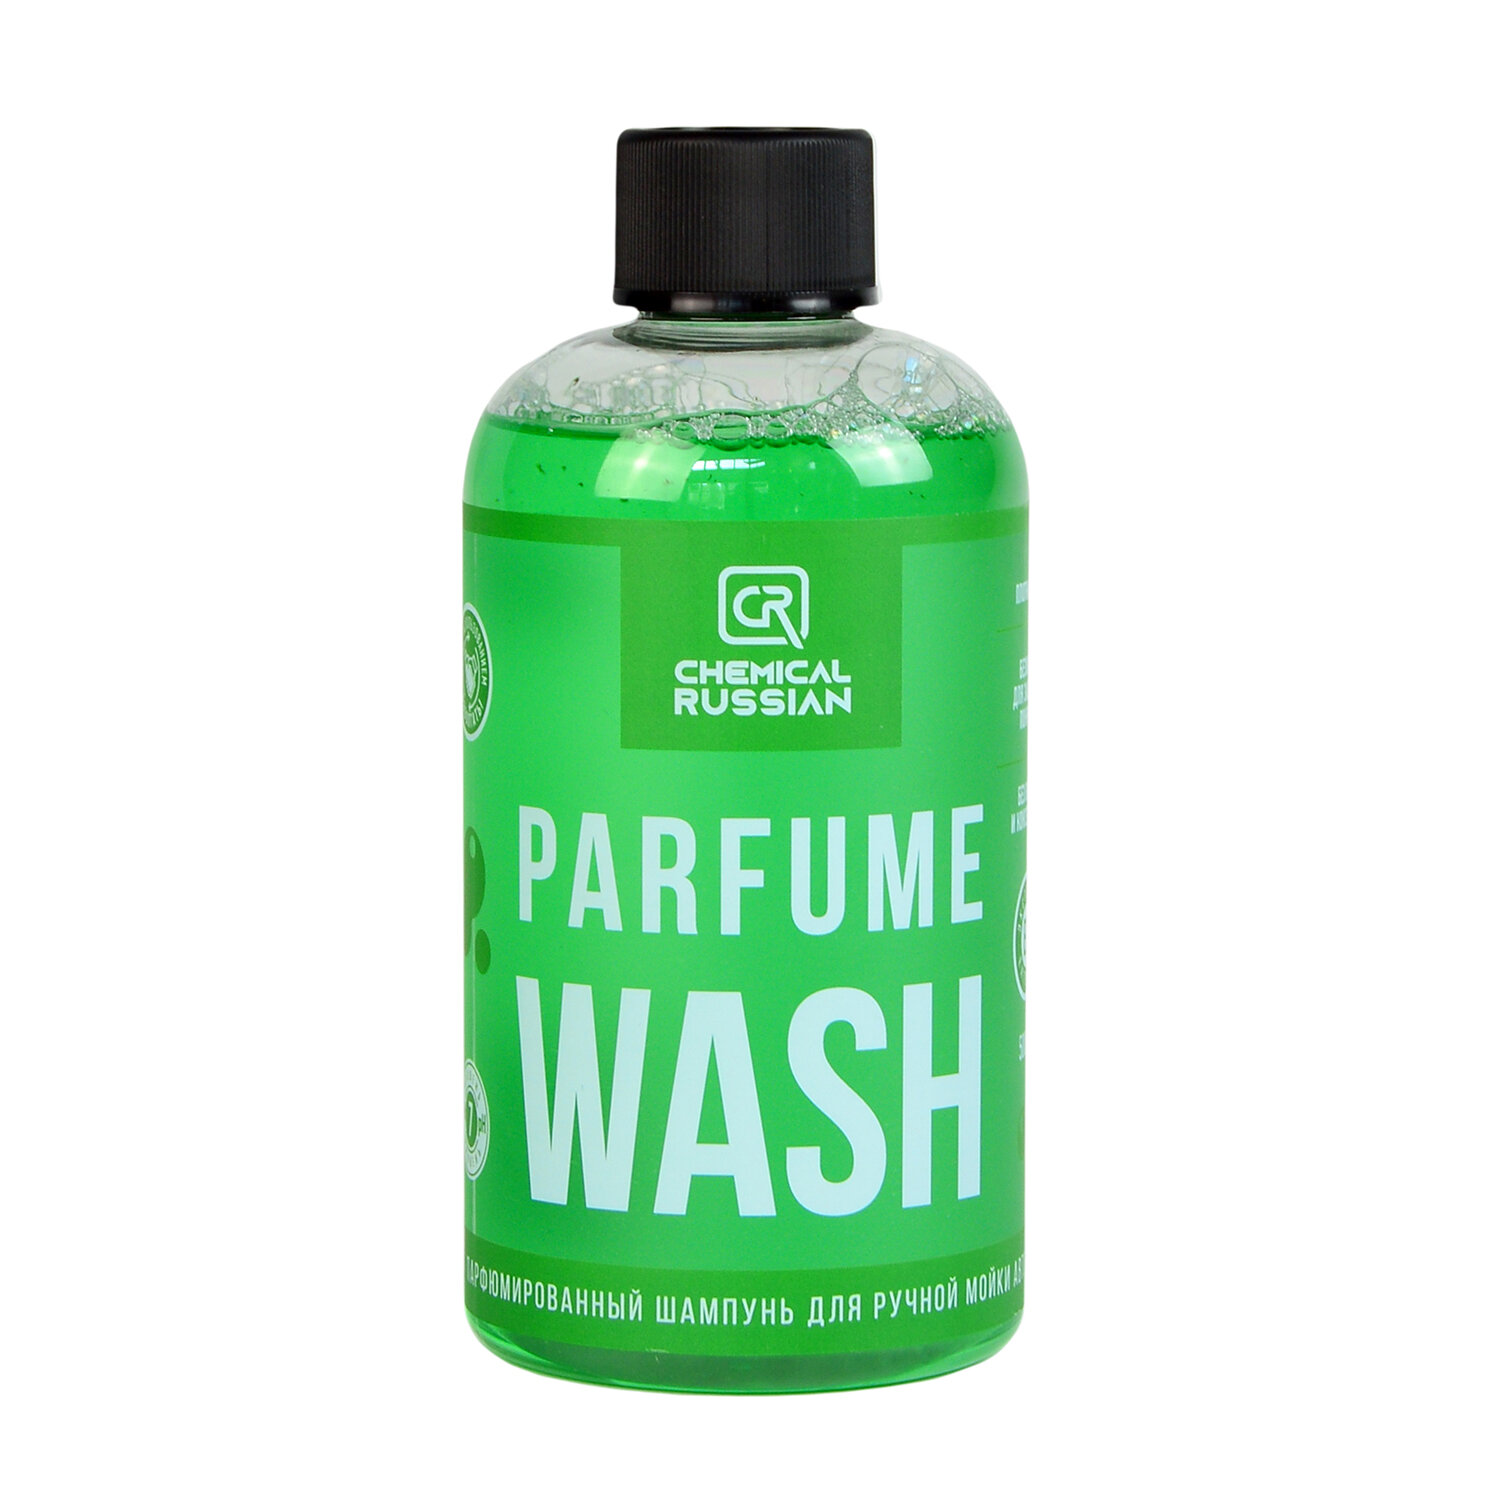 Parfume Wash - парфюмированный шампунь для ручной мойки авто 500 мл CR869